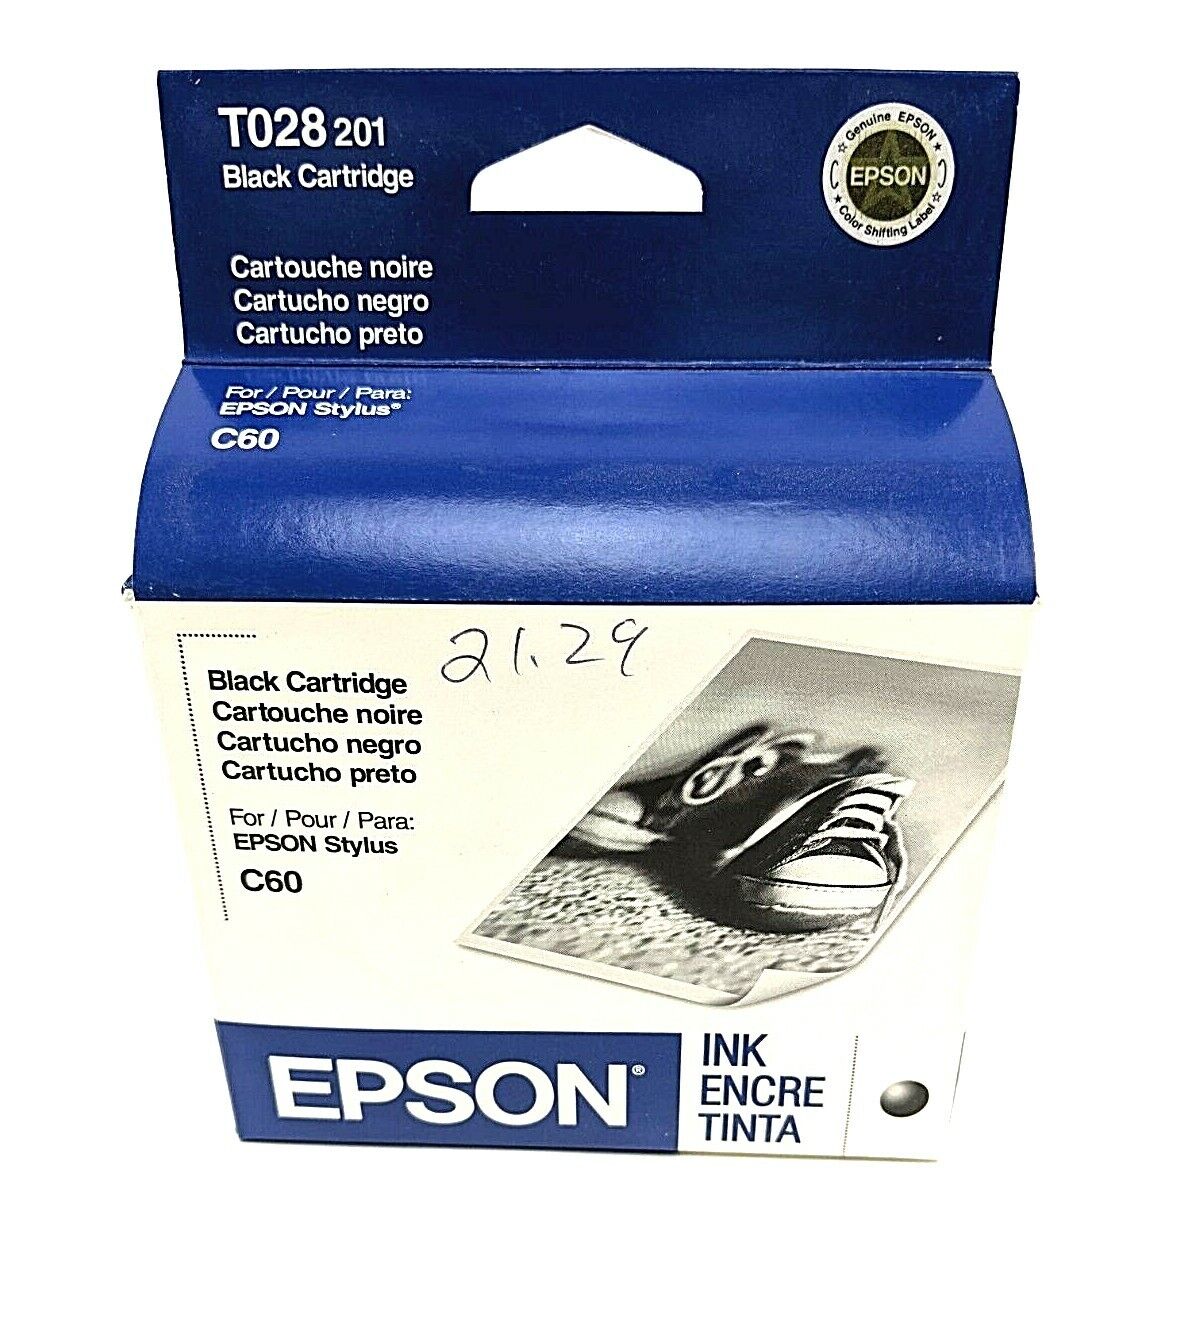 Epson T028 201 Black Ink Cartridge New Sealed Expired 2009